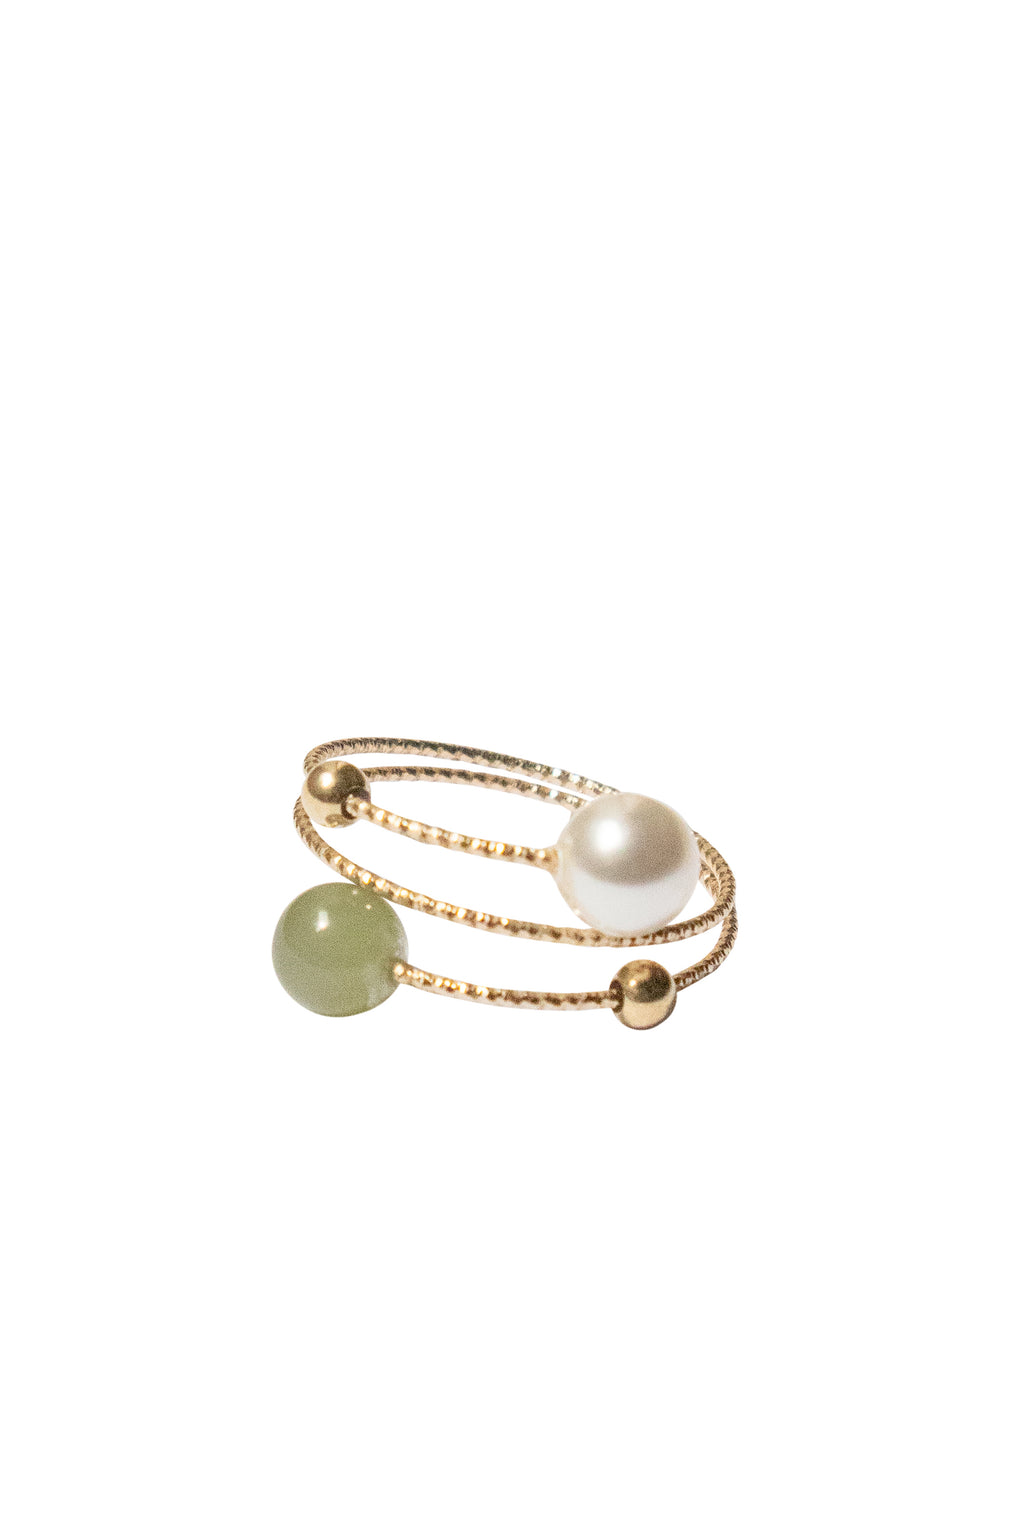 seree-alyssa-adjustable-skinny-ring-nephrite-green-jade-faux-pearl-1